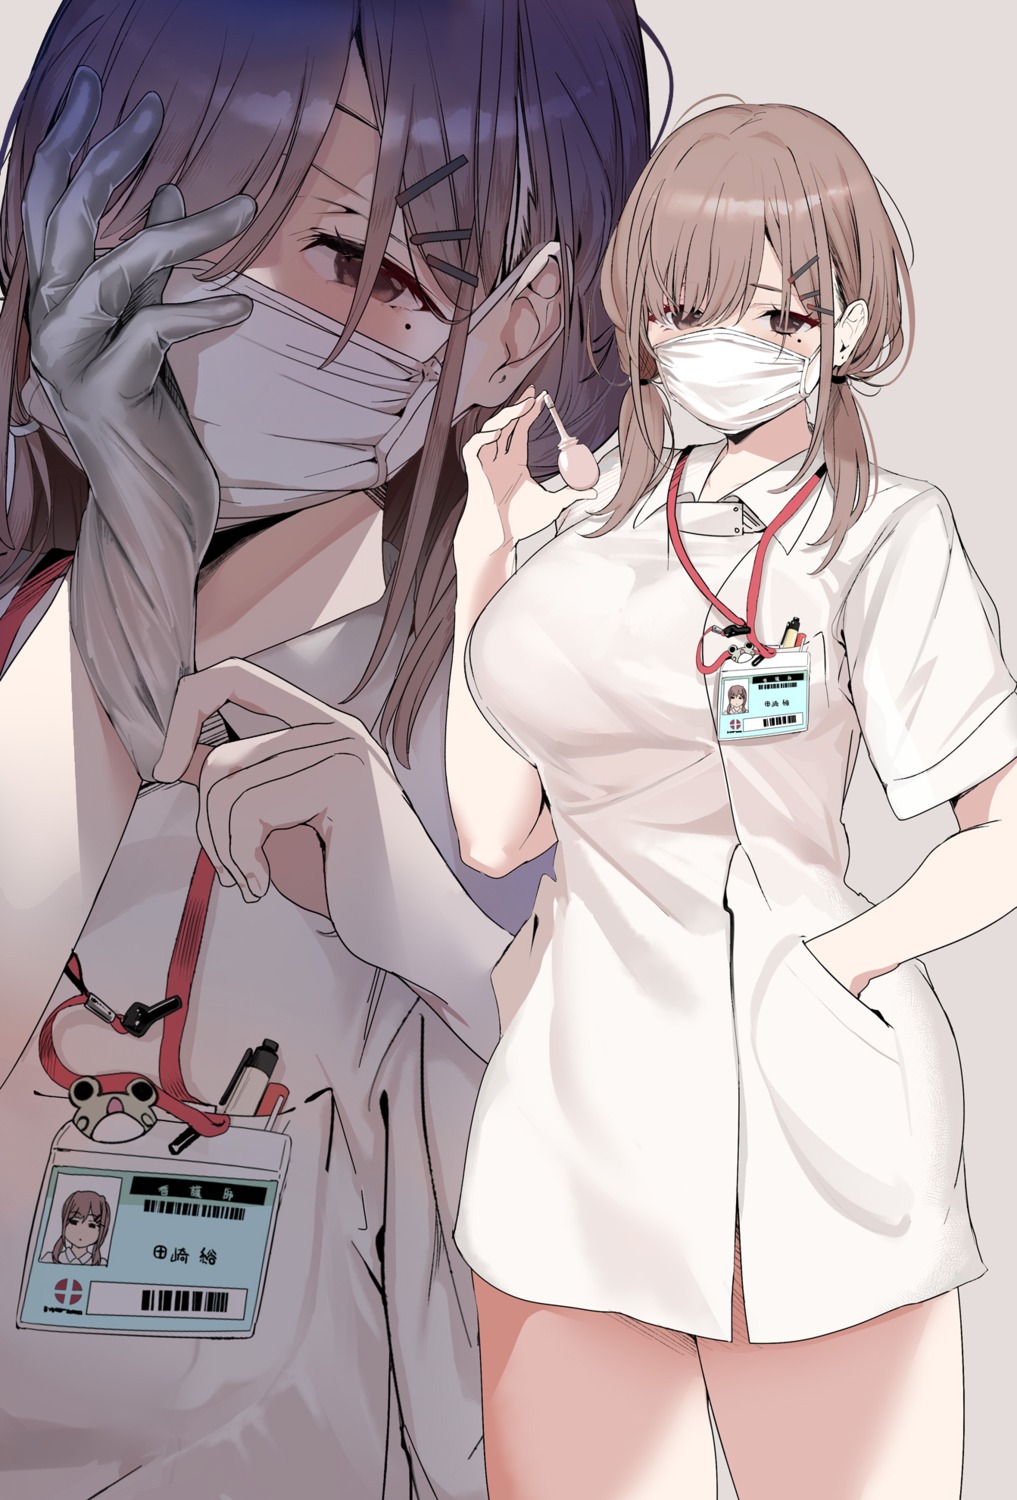 marushin nurse